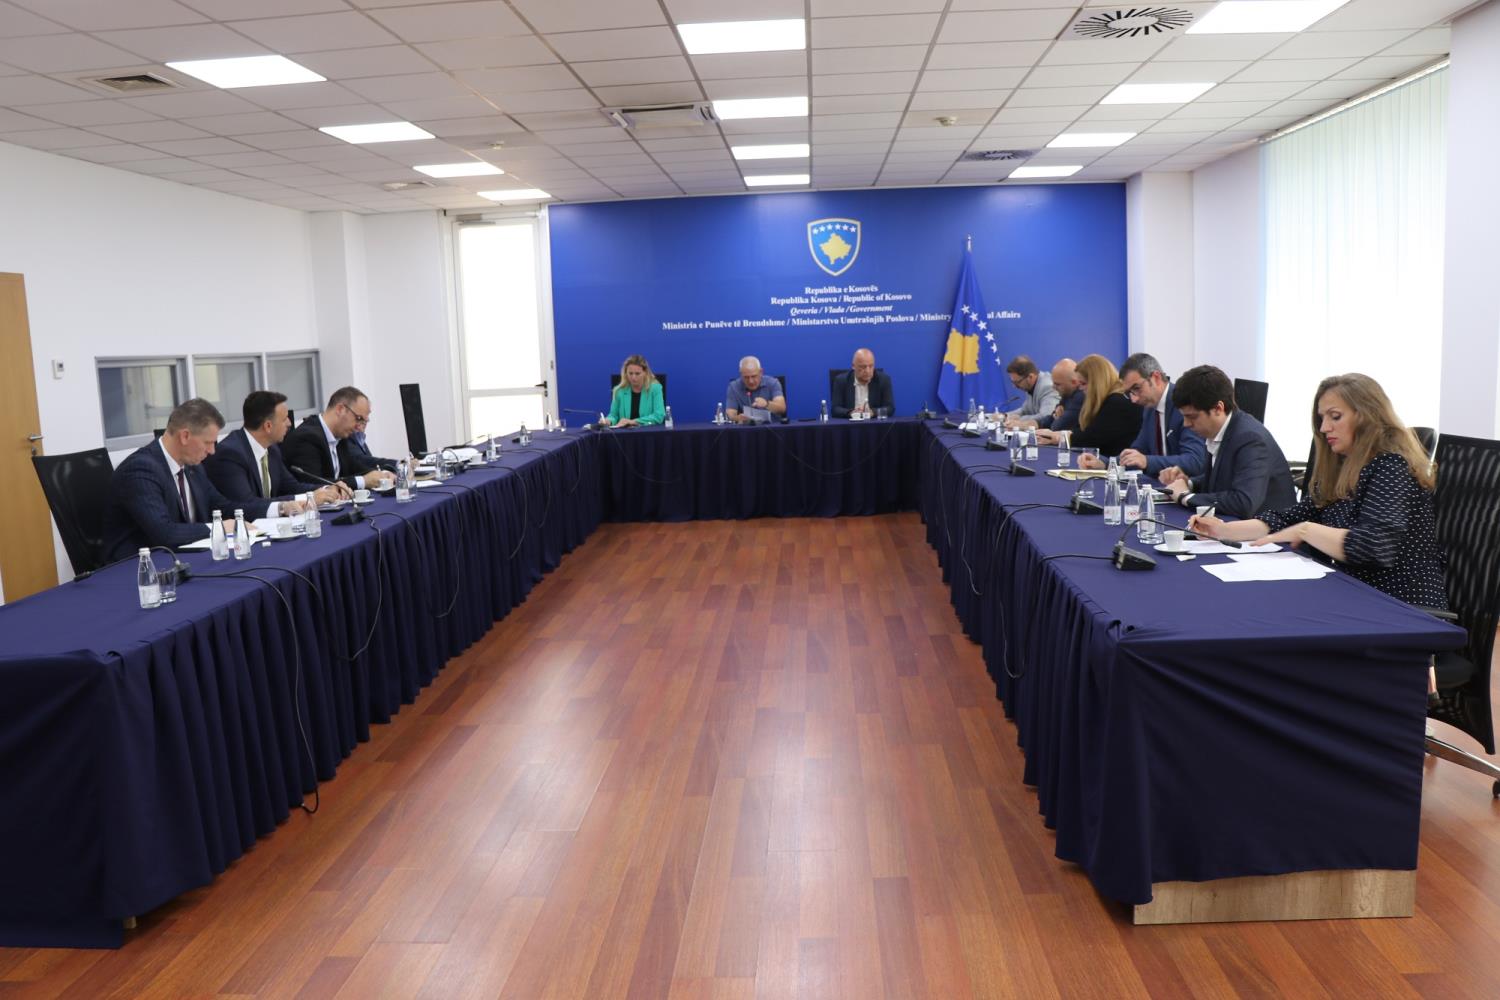 Ministri Sveçla takoi përfaqësuesit e institucioneve të Republikës së Kosovës të cilët raportojnë për zbatimin e aktiviteteve që dalin nga plani i përbashkët kundër terrorizmit 